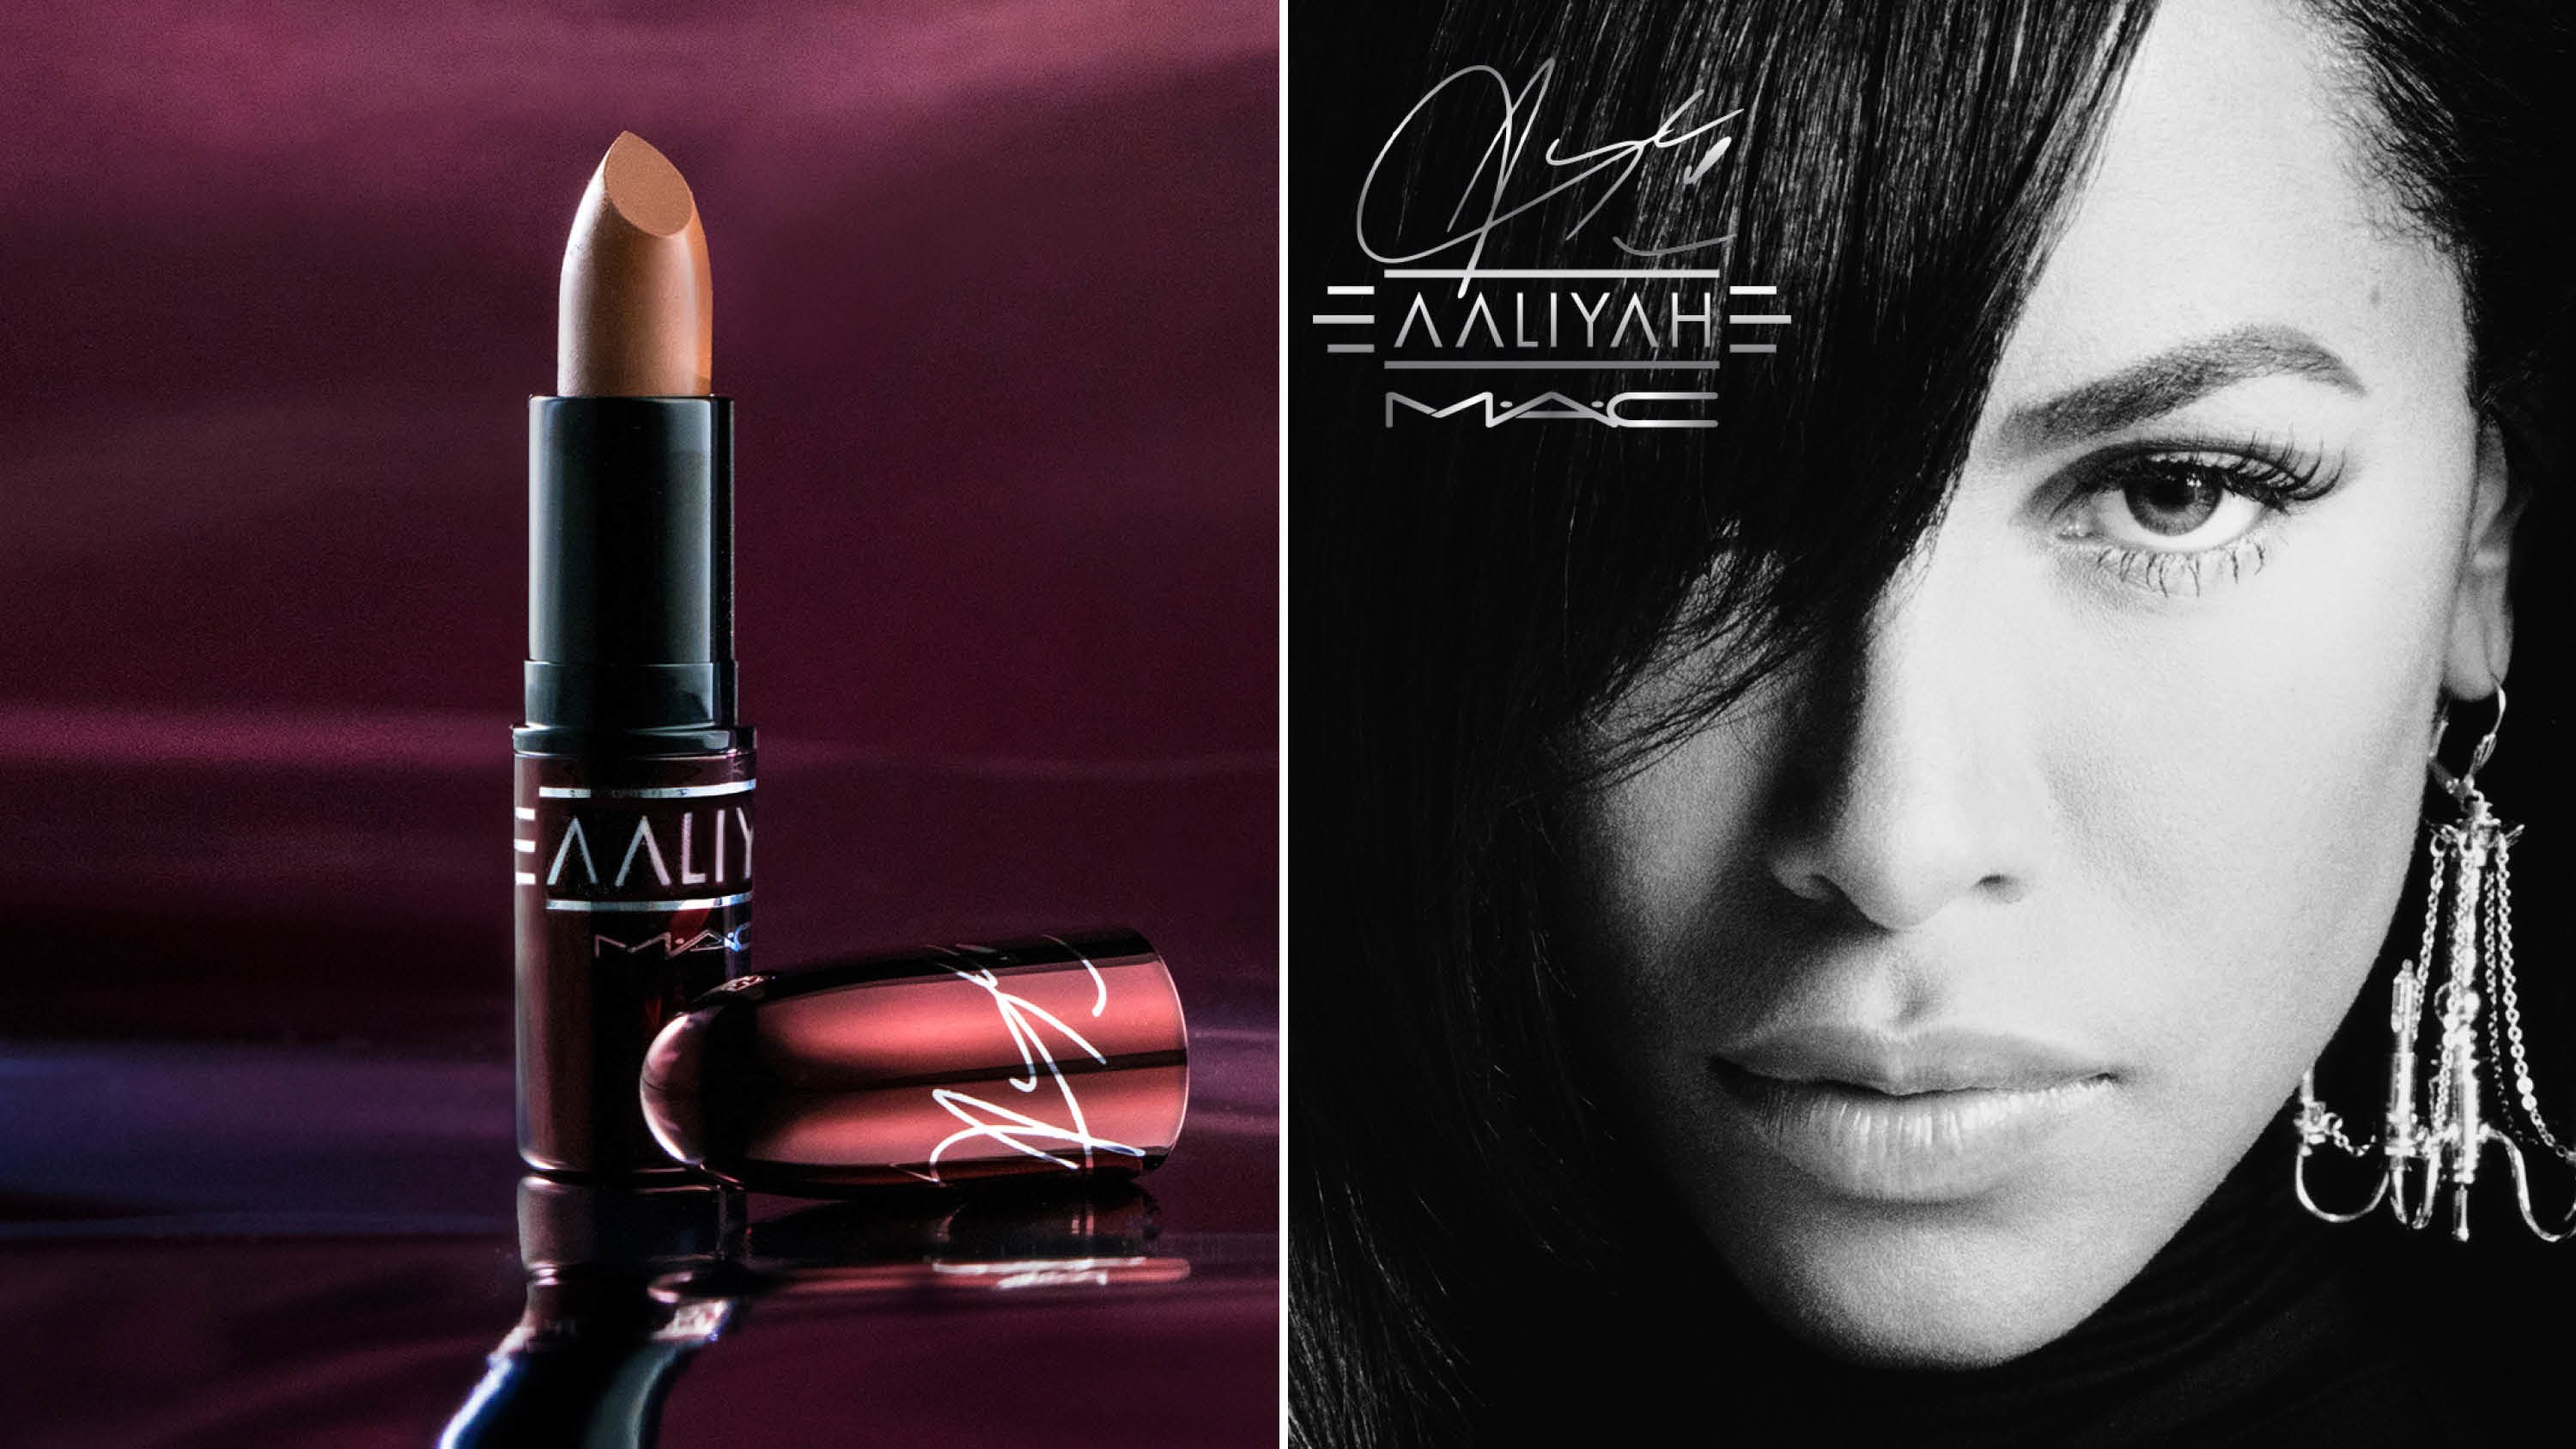 Aaliyah x MAC 联乘美妆系列单品一览